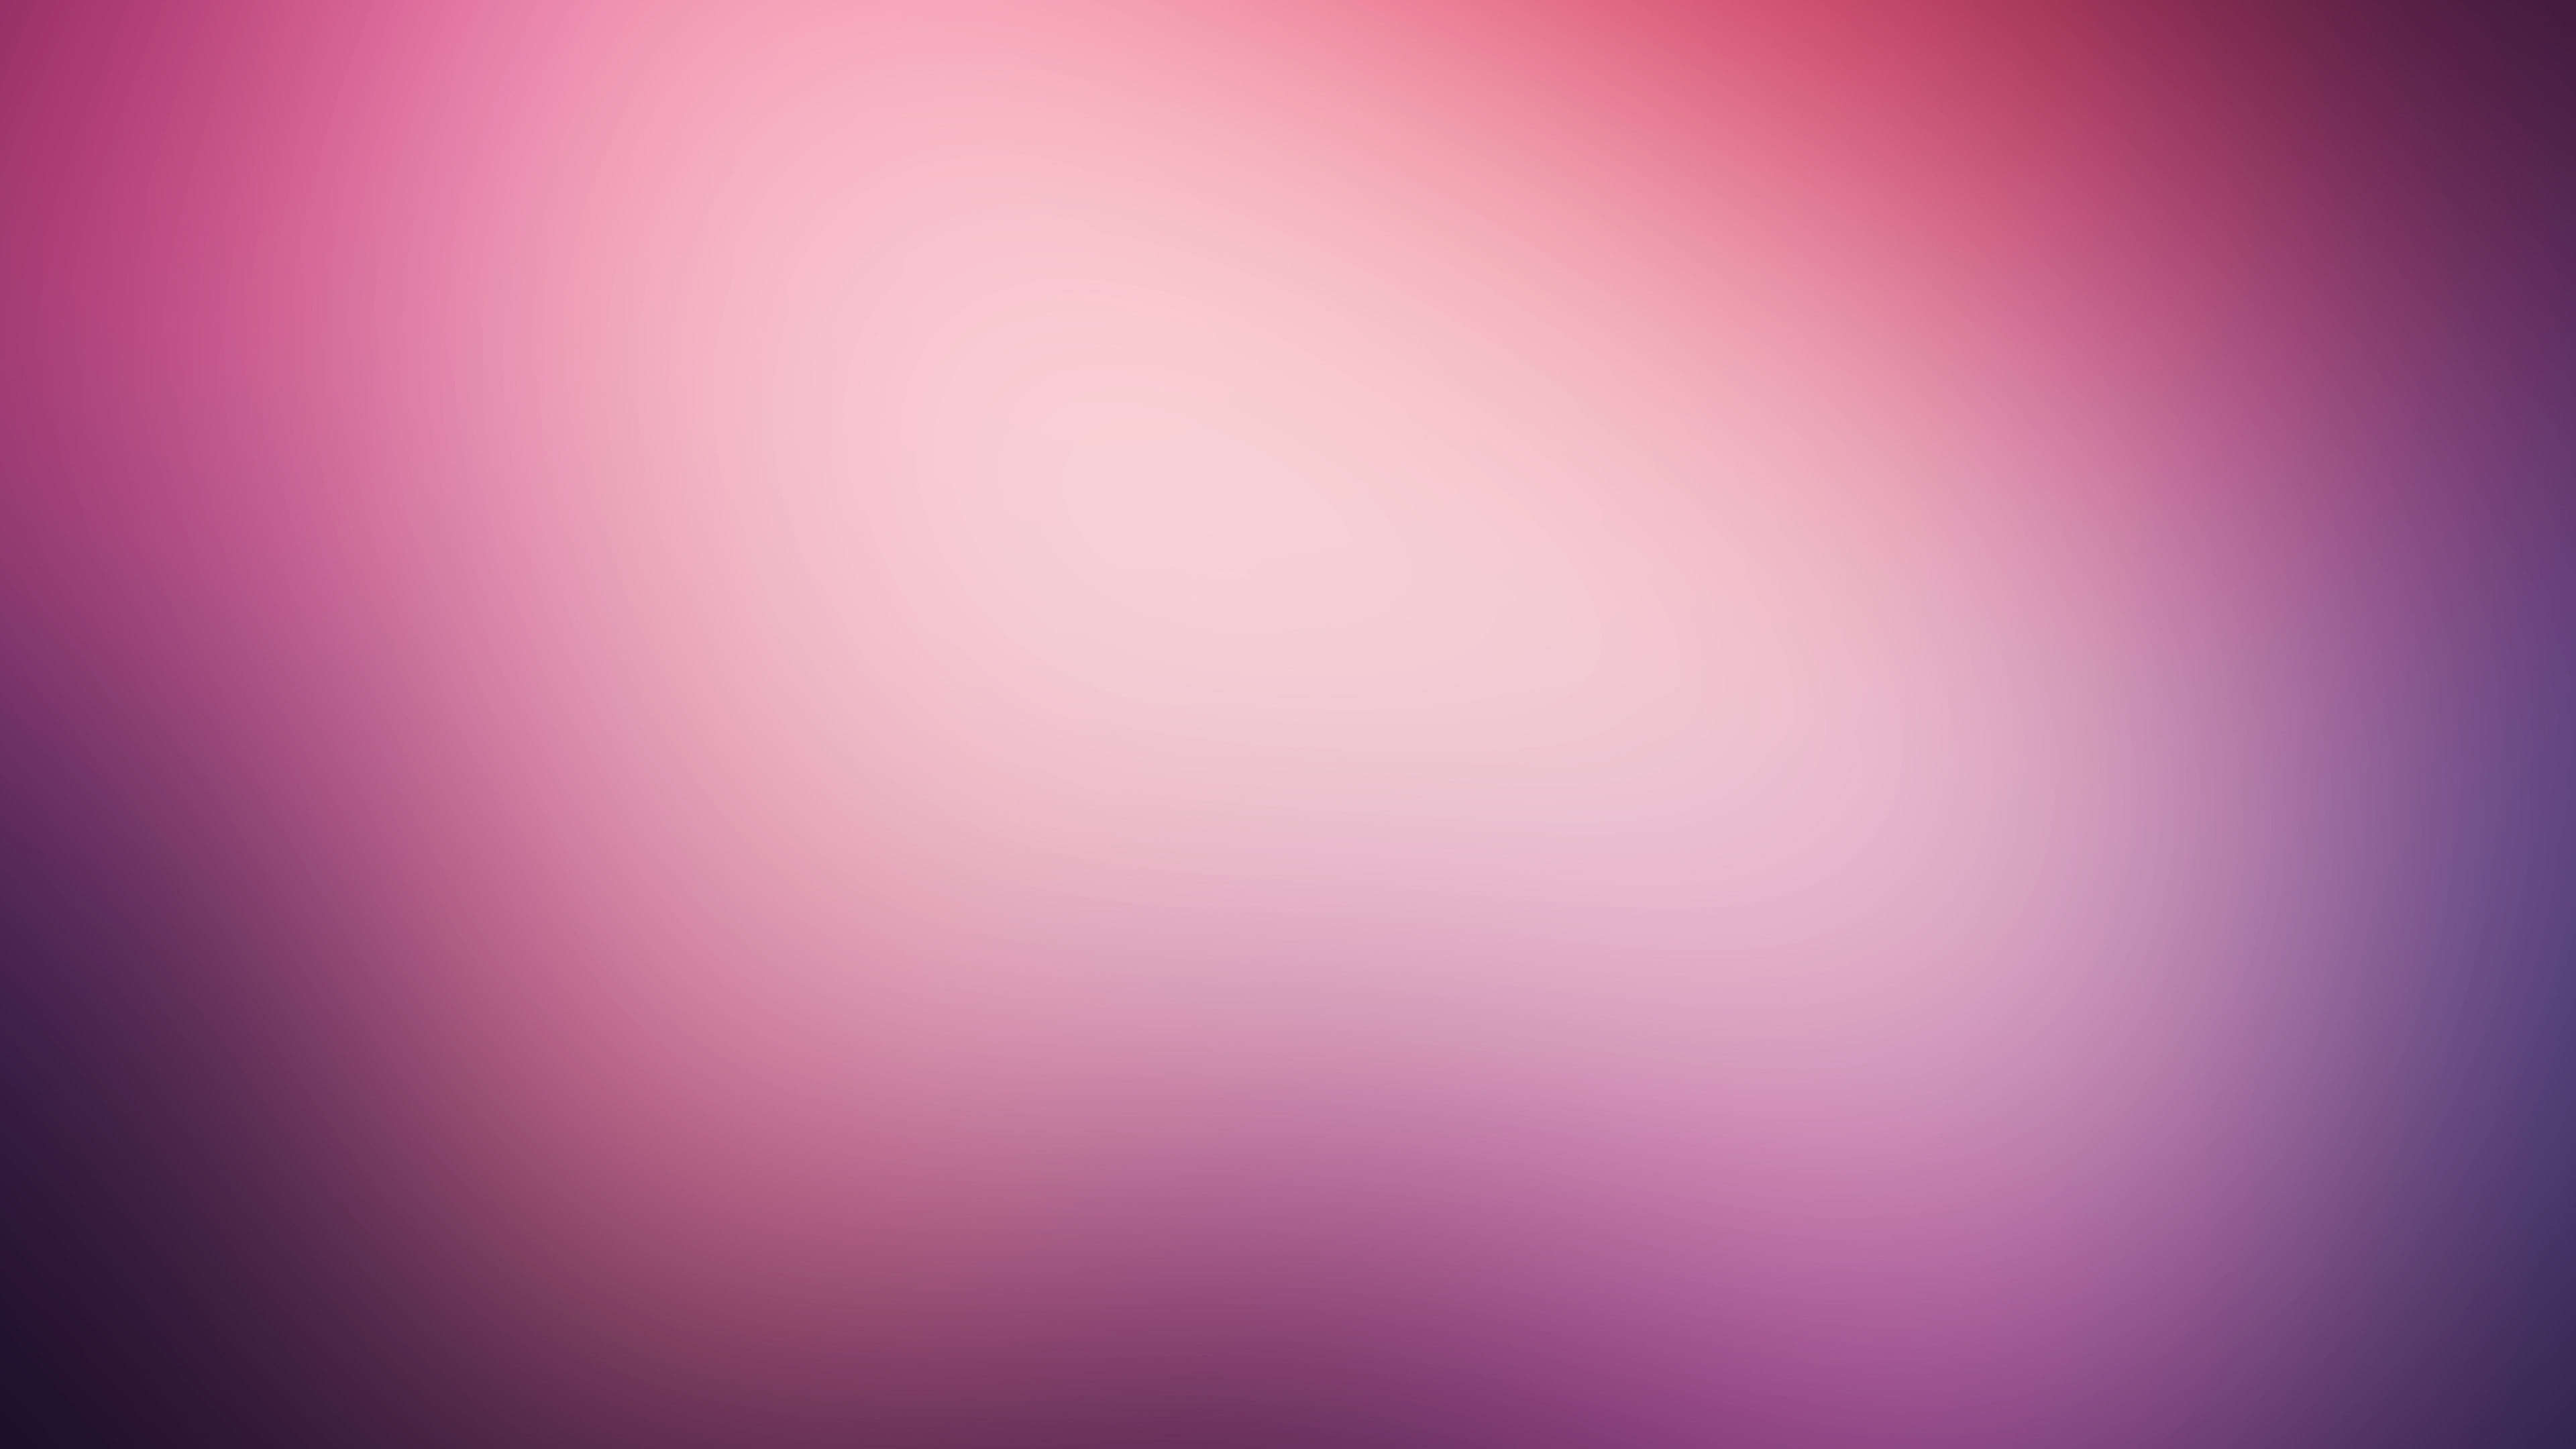 Bộ sưu tập 900 3840x2160 pink background Đẹp nhất